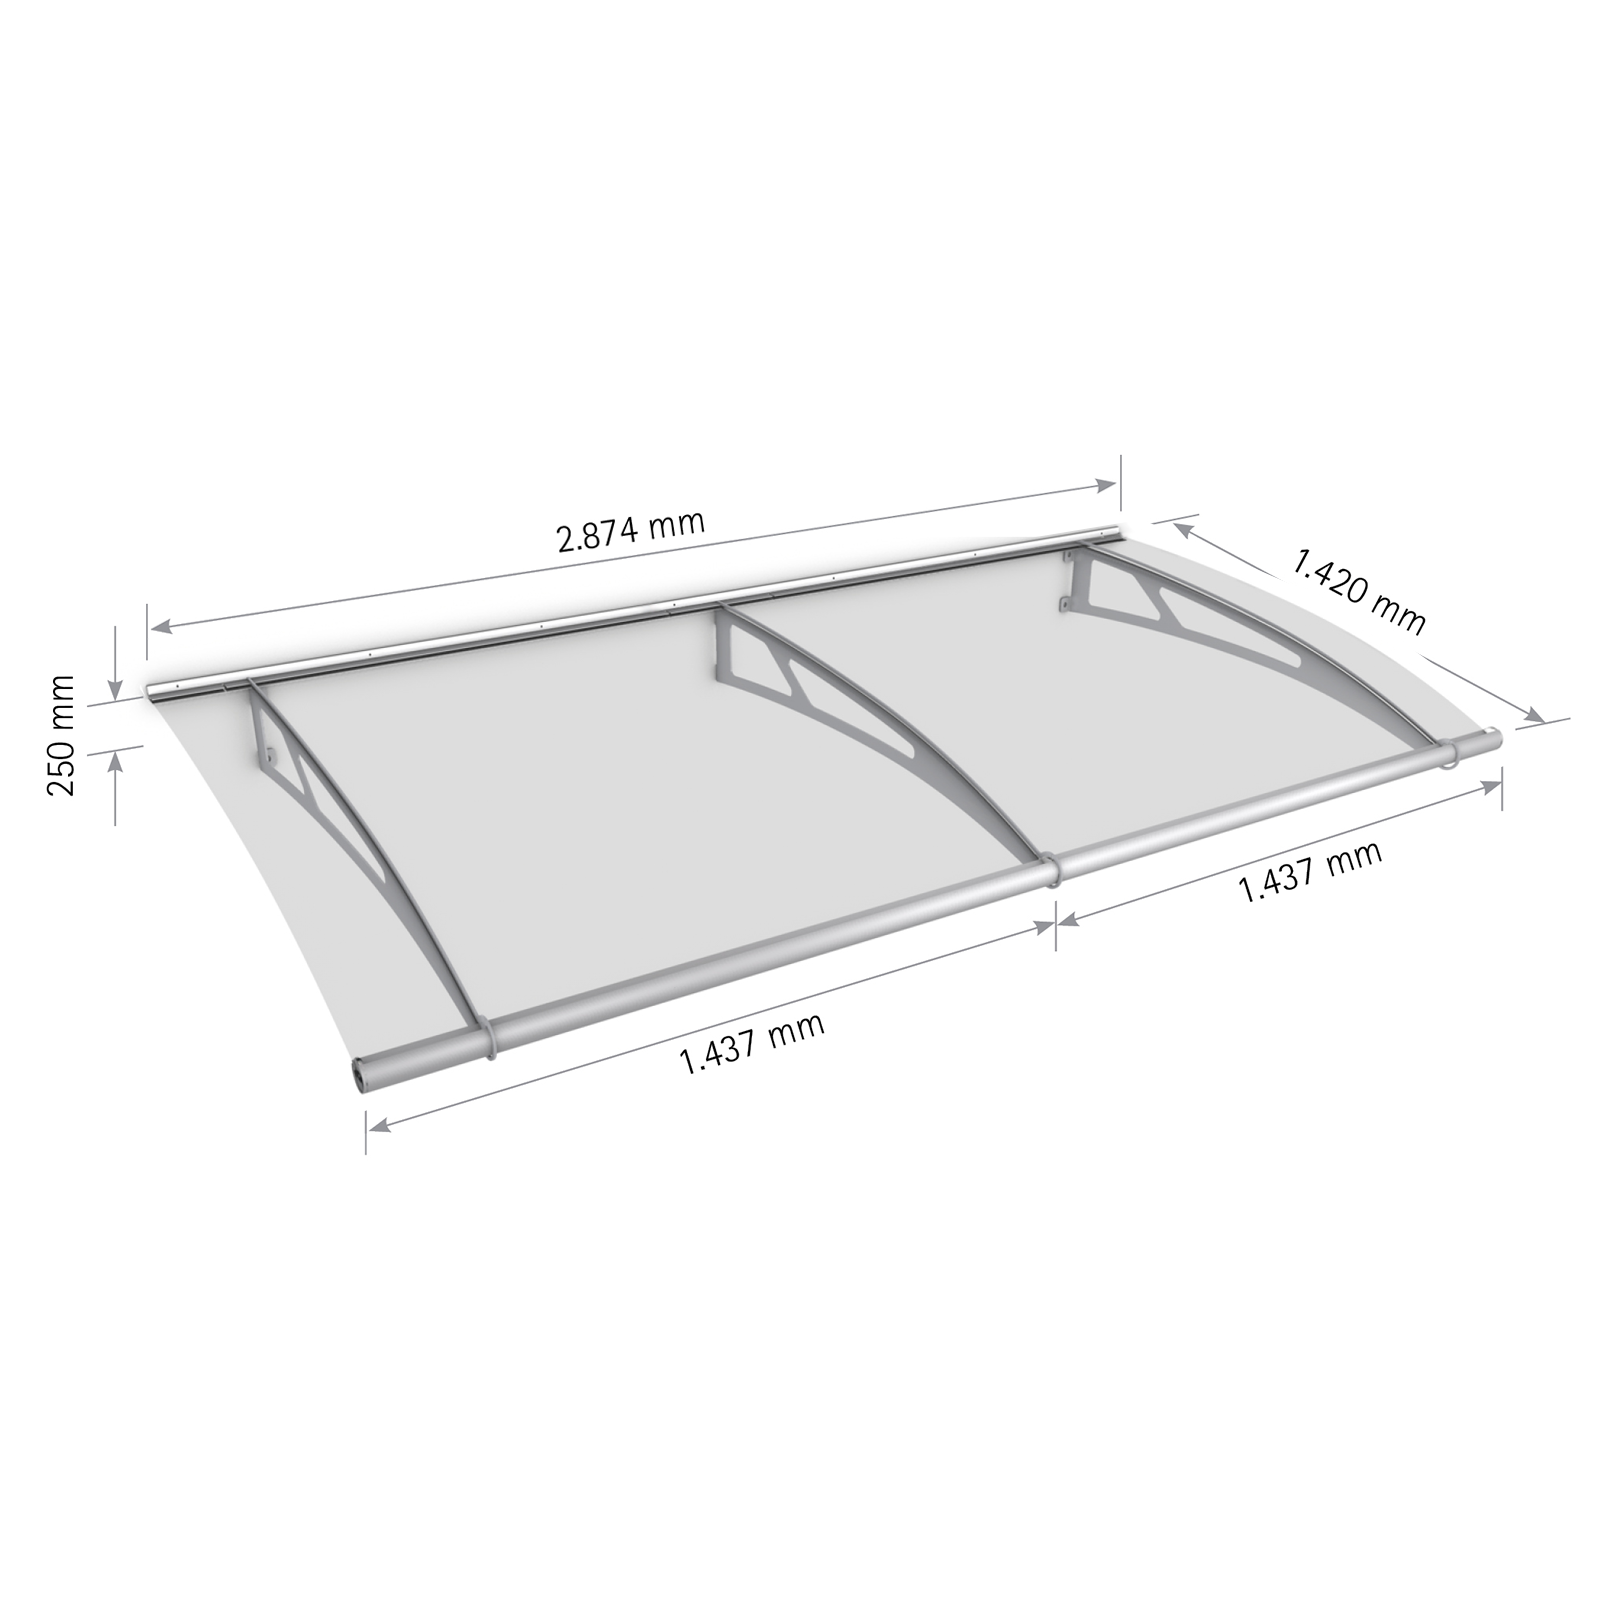 Schulte marquise auvent de porte, module de base, 287 x 142 cm, verre acrylique transparent, fixation inox brossé mat XL 1